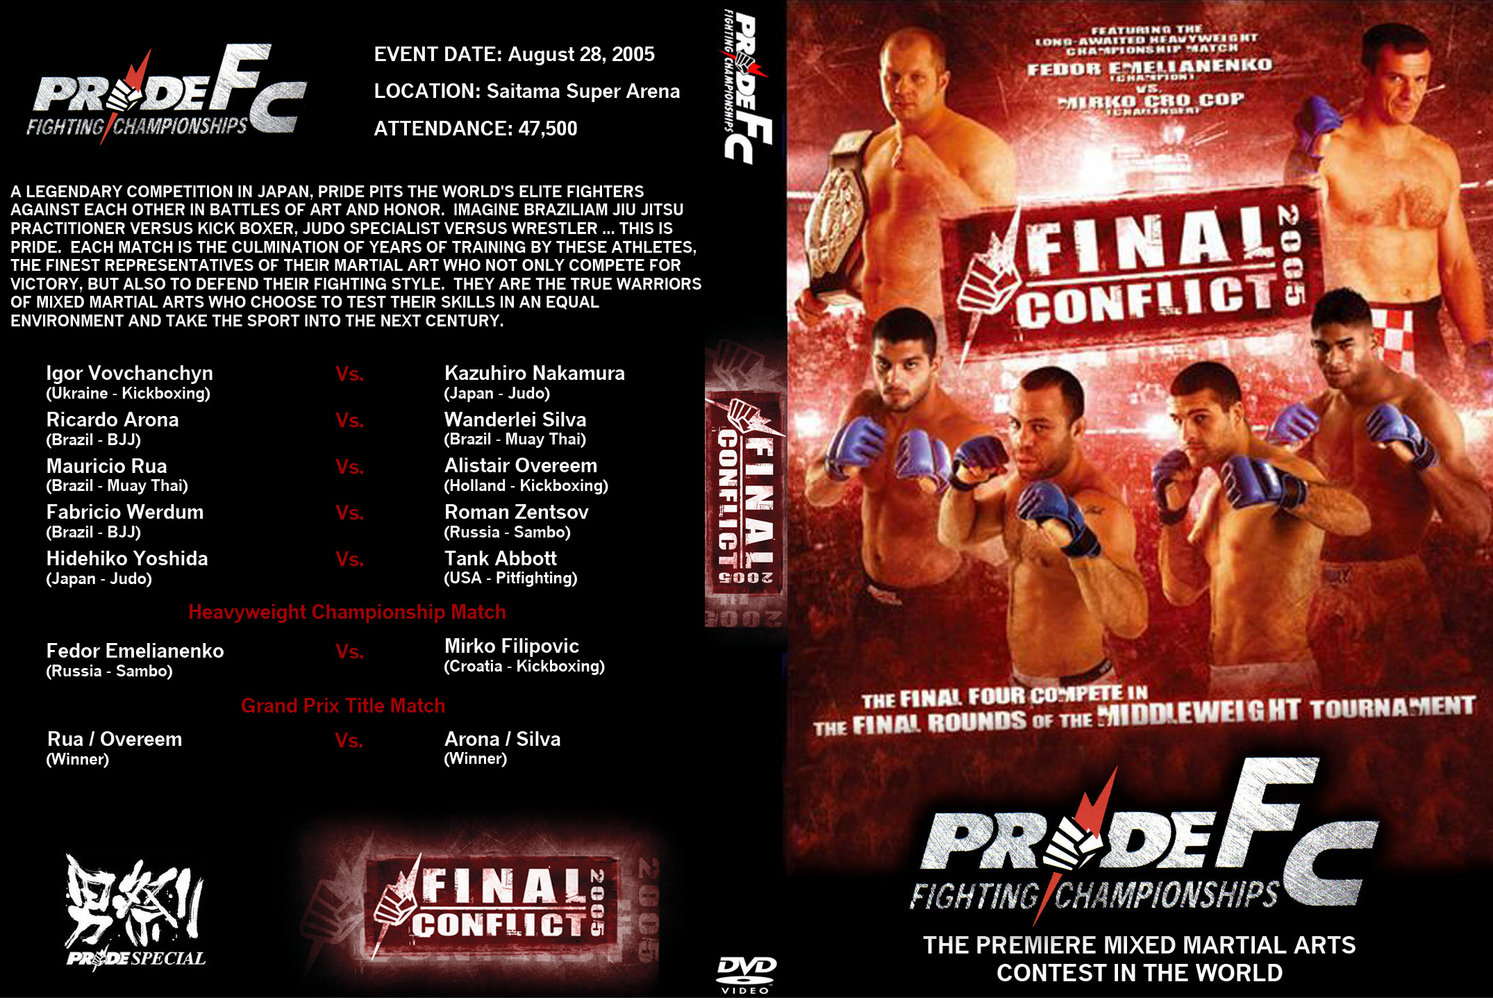 Jaquette DVD Pride Fc Final Conflict 2005